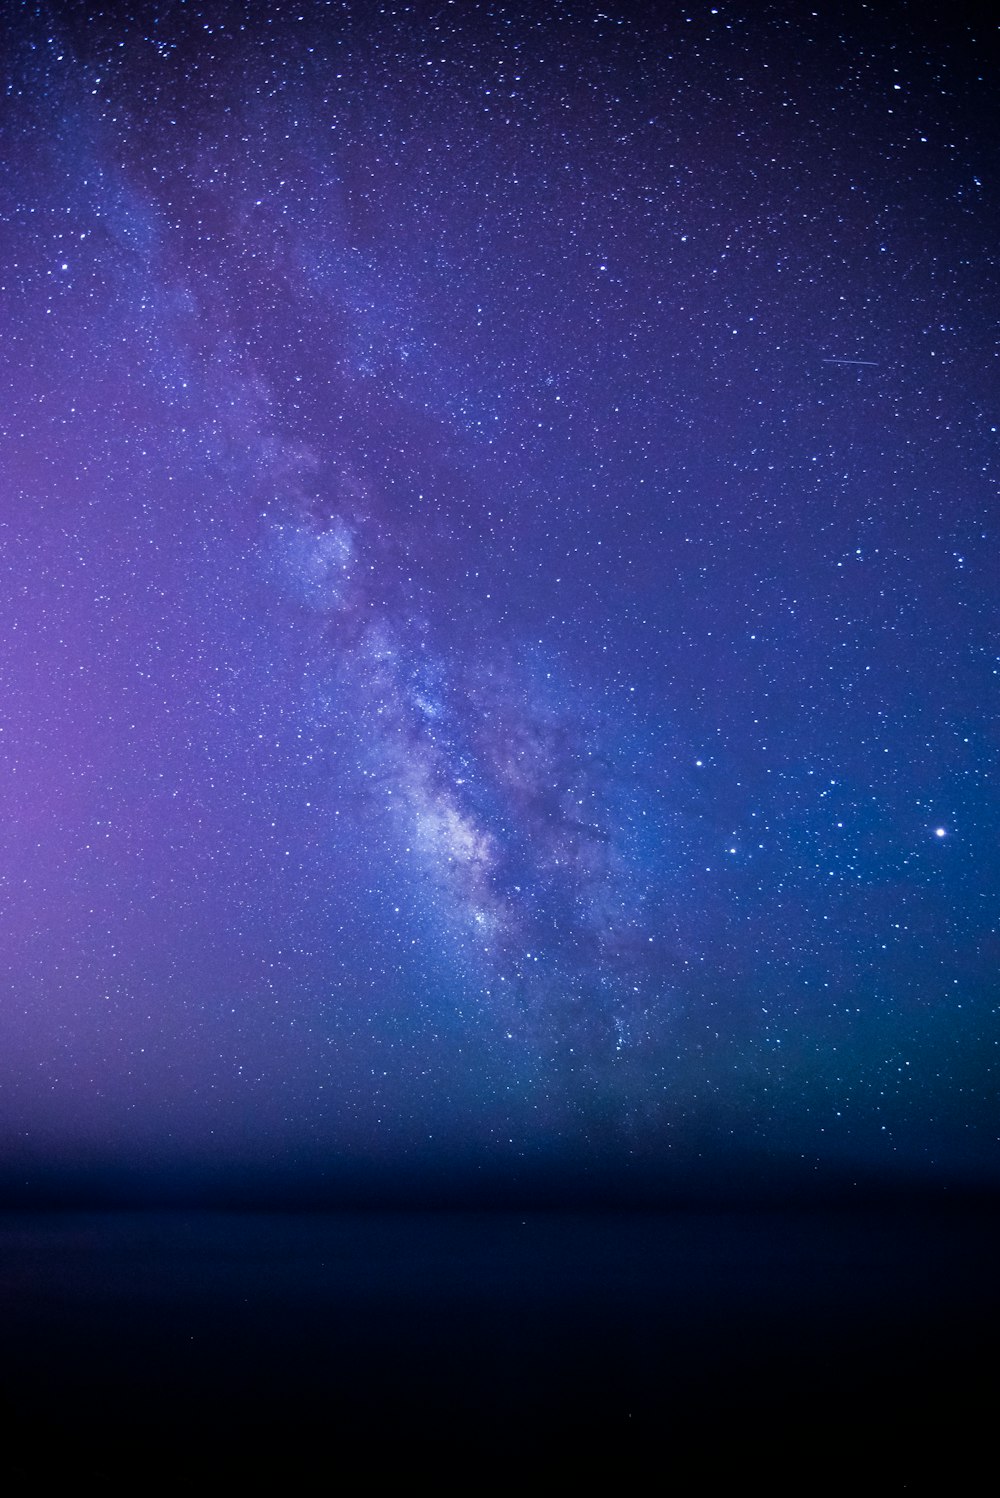 Vũ trụ đường Ngân Hà là một trong những hiện tượng thiên nhiên tuyệt đẹp nhất, và hình ảnh vũ trụ này đang rất được yêu thích. Hãy cùng chiêm ngưỡng những bức ảnh vũ trụ đường Ngân Hà tuyệt đẹp, để cảm nhận được sức hút khó tả của họ.